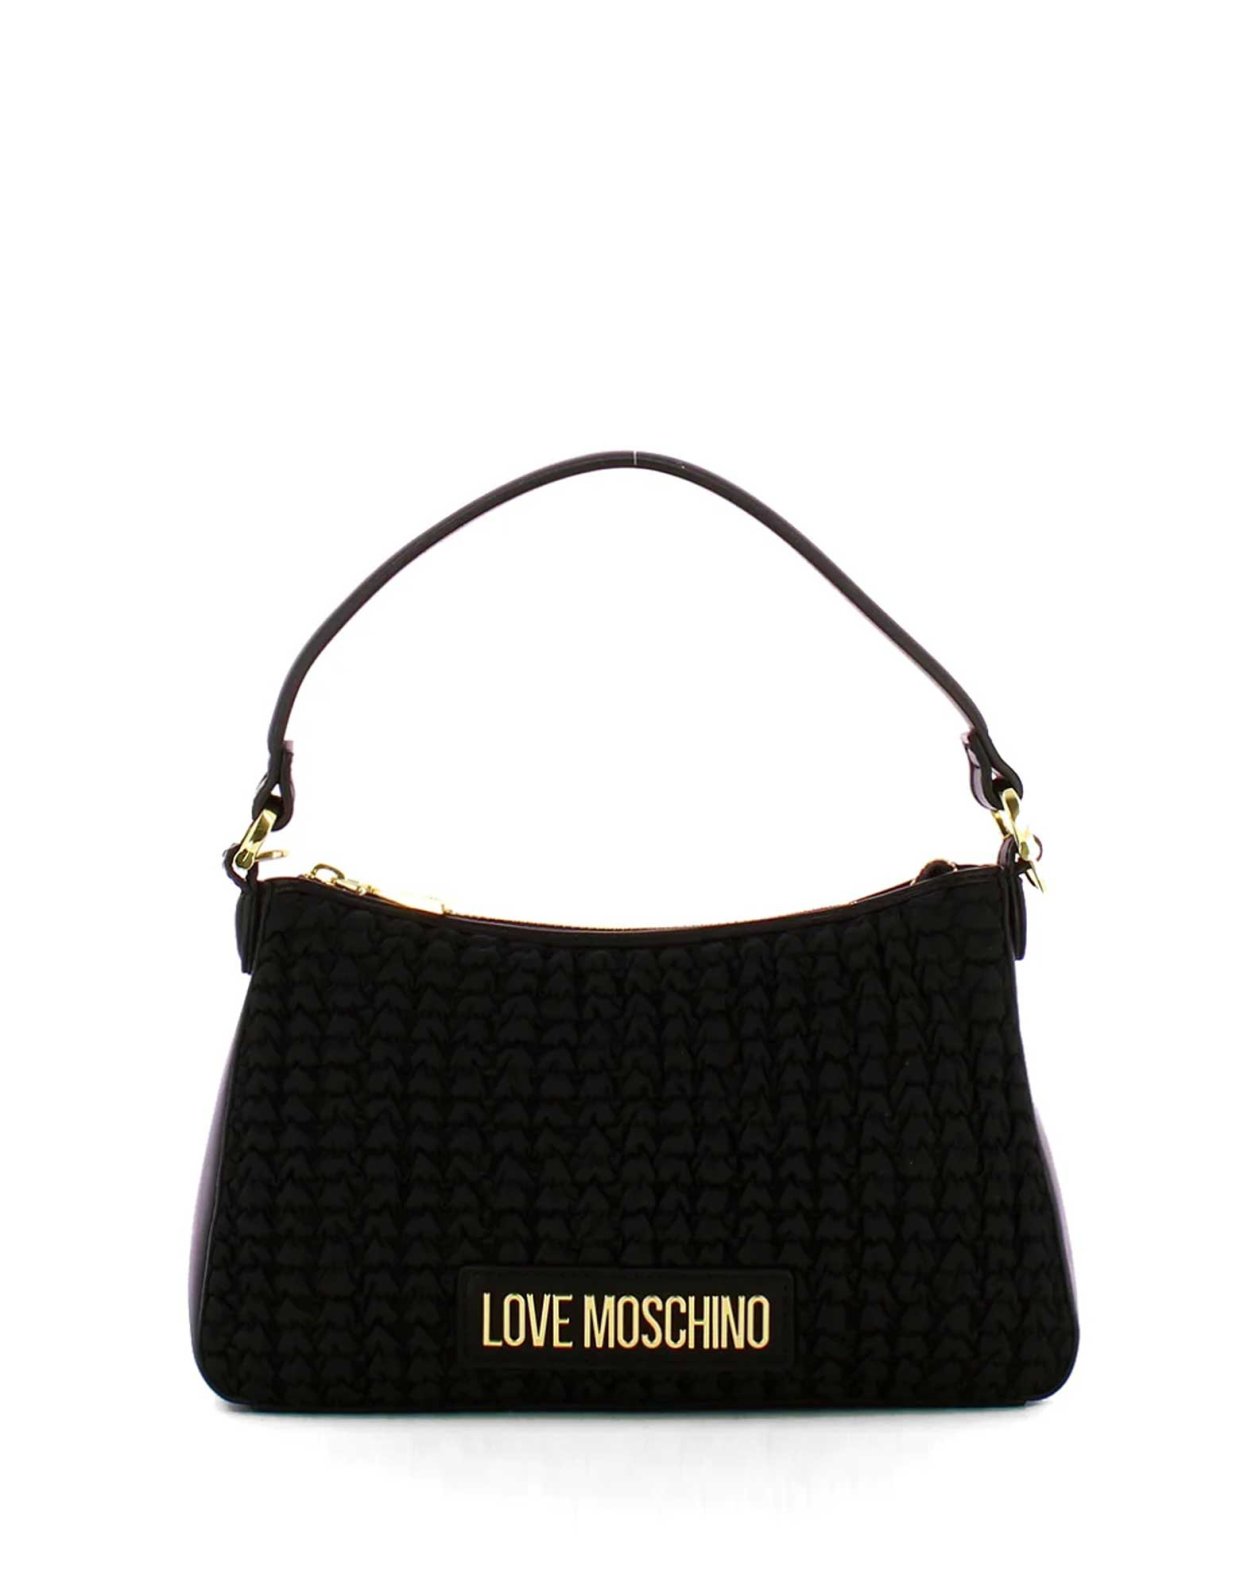 Love Moschino Hug hobo bag black